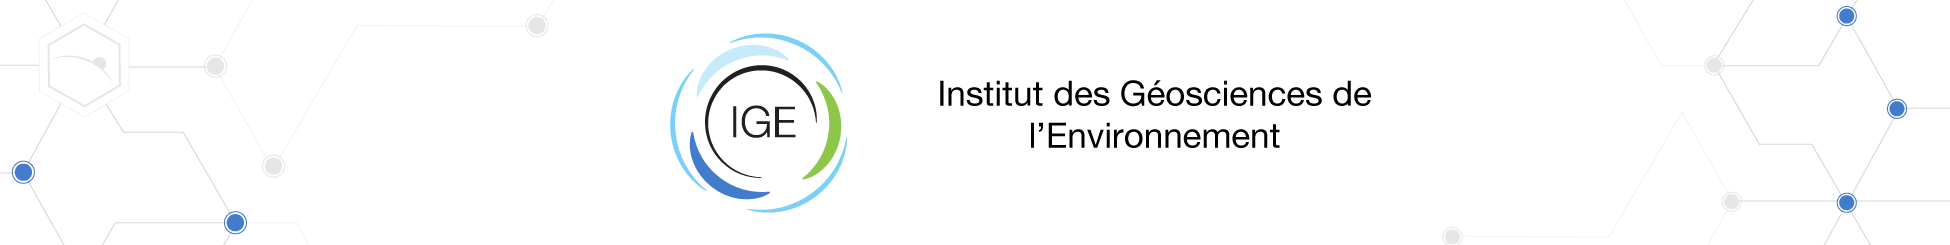 Institut des Géosciences de l'Environnement